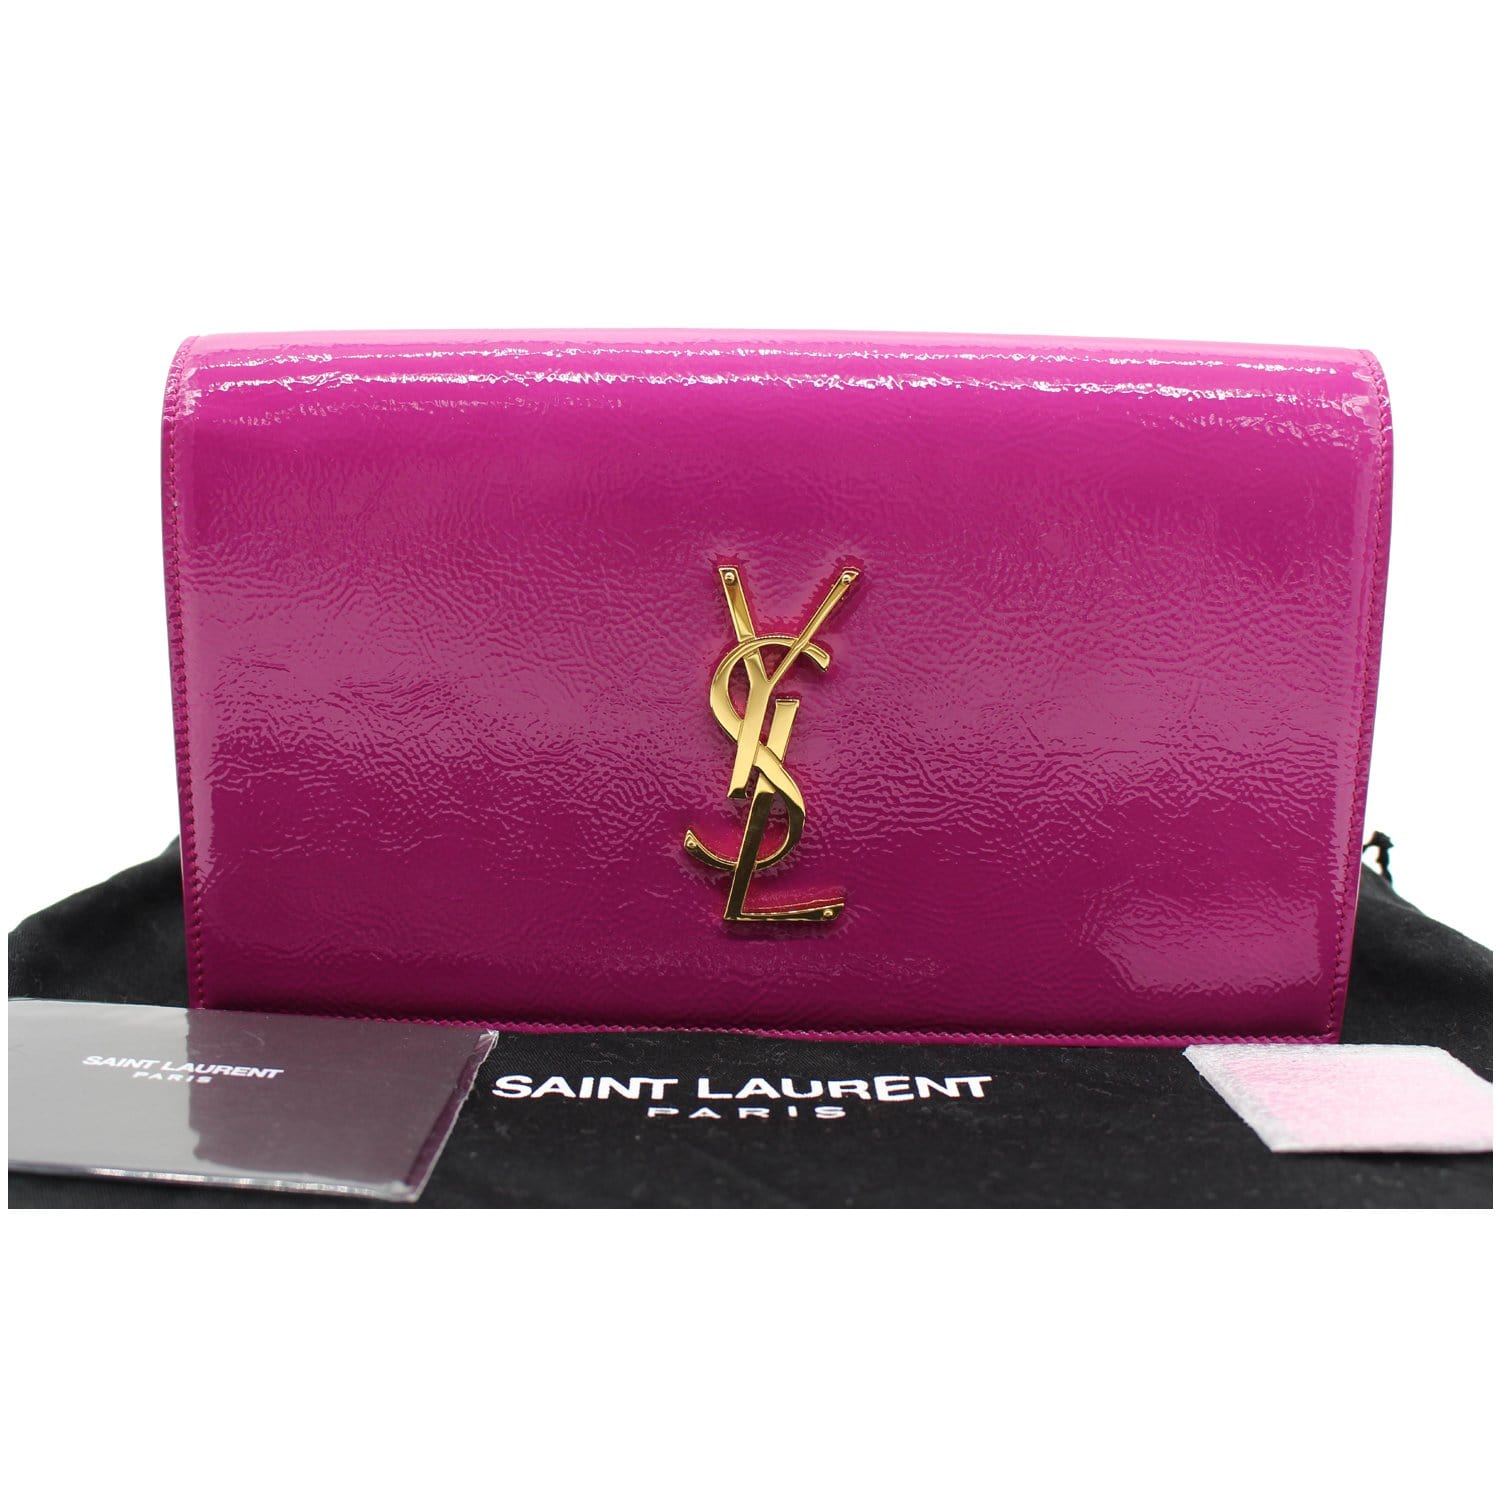 YVES SAINT LAURENT Belle de Jour Patent Leather Clutch Bag Pink